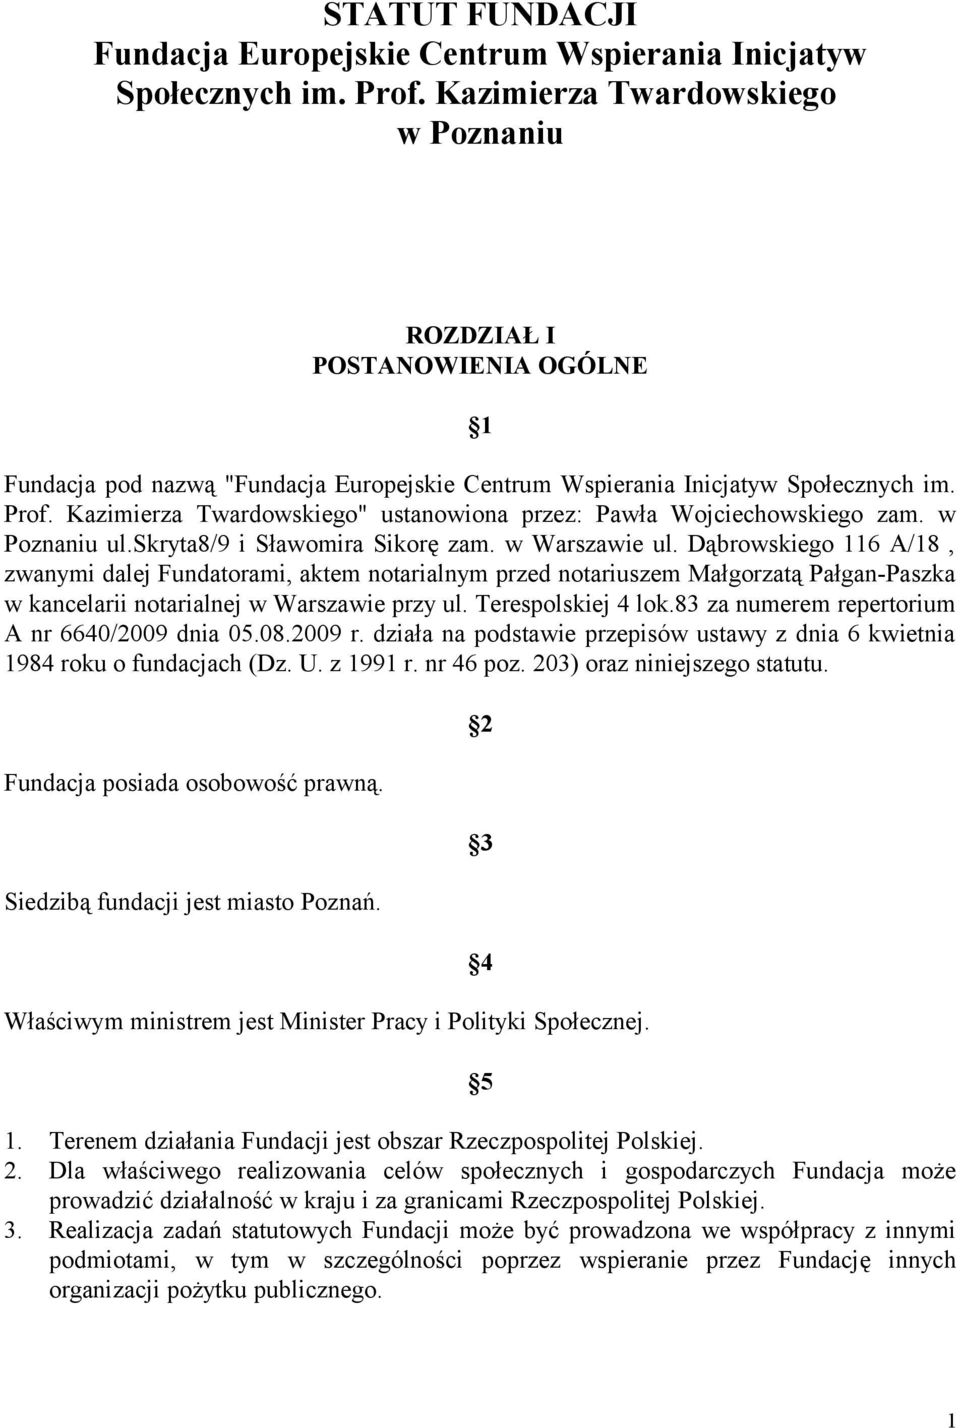 Kazimierza Twardowskiego" ustanowiona przez: Pawła Wojciechowskiego zam. w Poznaniu ul.skryta8/9 i Sławomira Sikorę zam. w Warszawie ul.